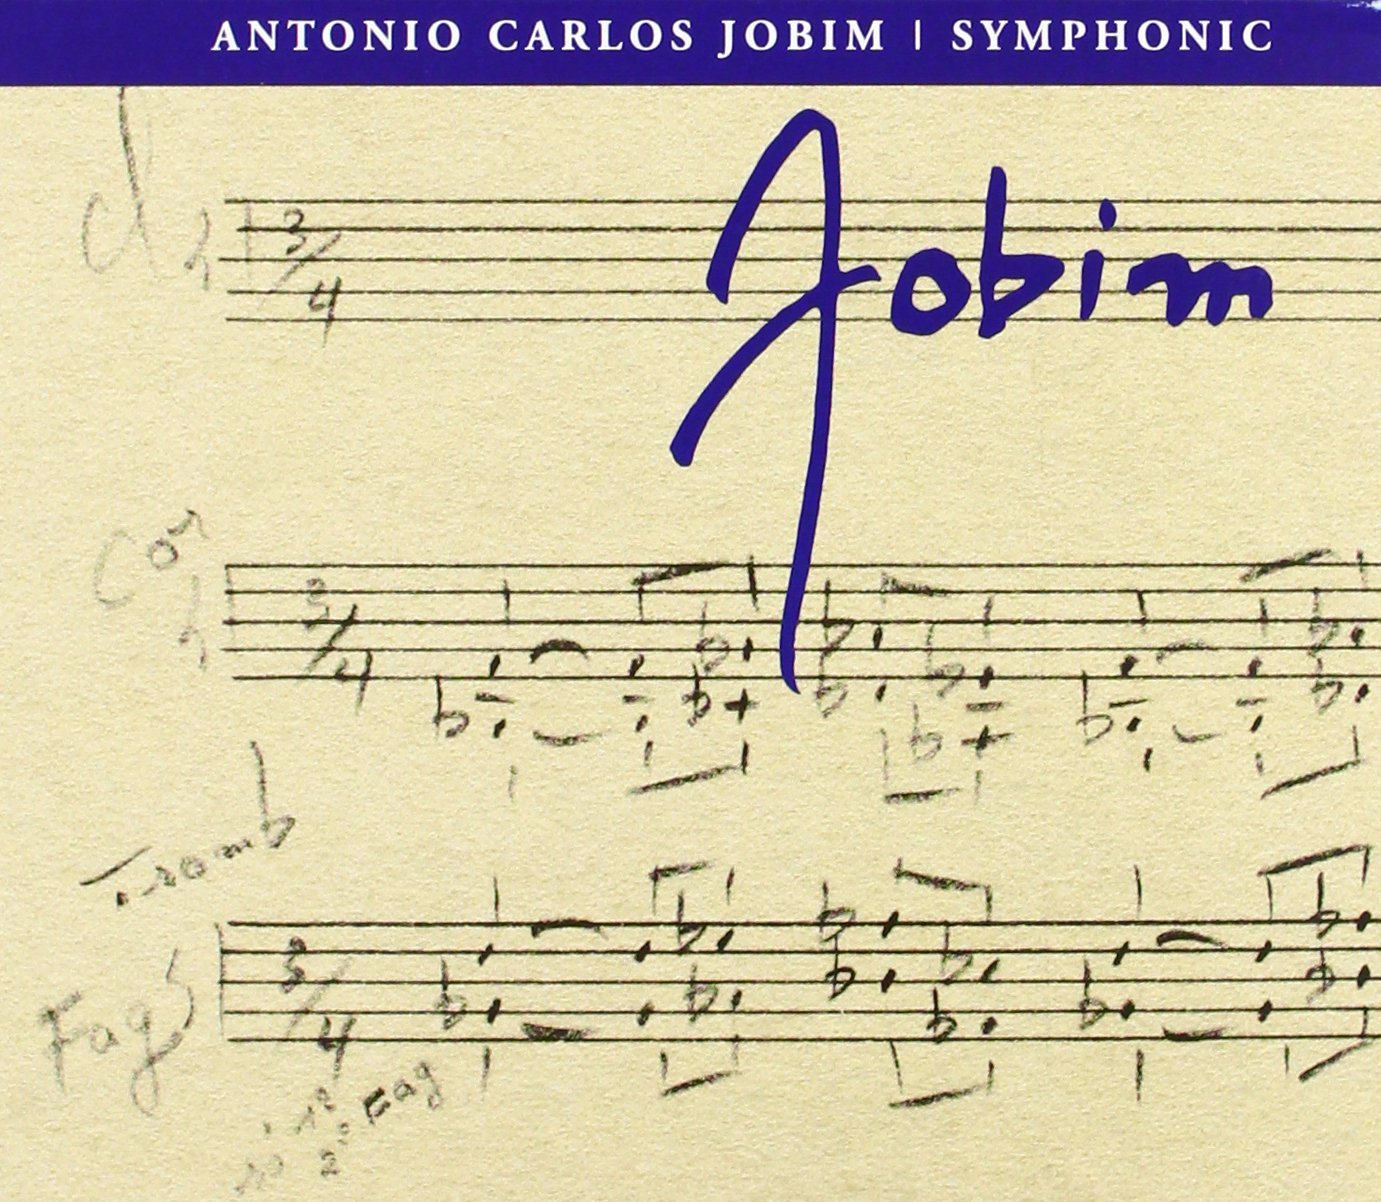 ANTONIO CARLOS JOBIM - Jobim Sinfônico / Antonio Carlos Jobim ‎: Jobim Sinfônico cover 